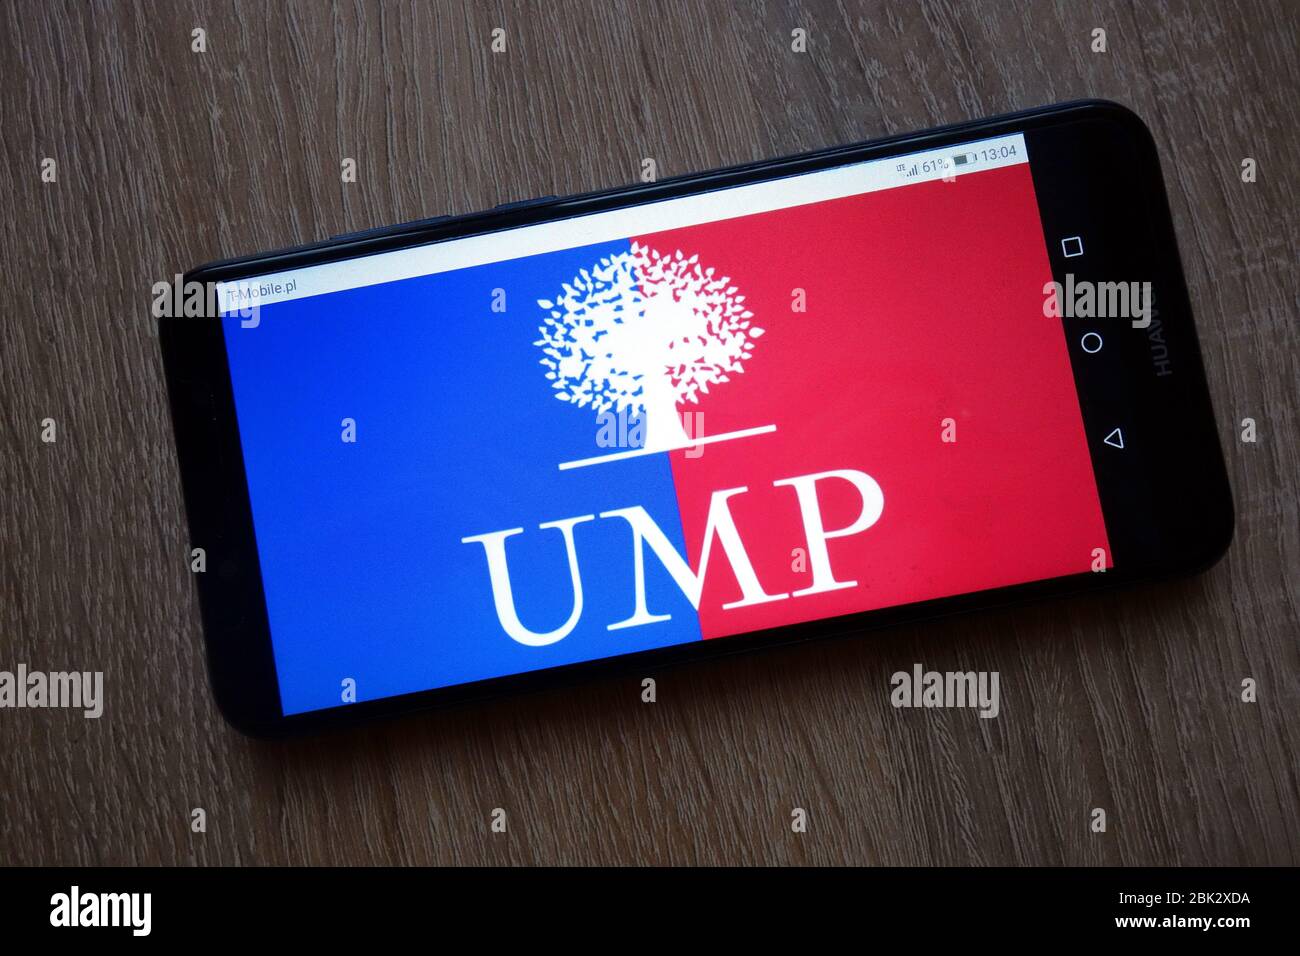 Le logo du parti Union pour un mouvement populaire (Français: Union pour un mouvement populaire) affiché sur smartphone Banque D'Images